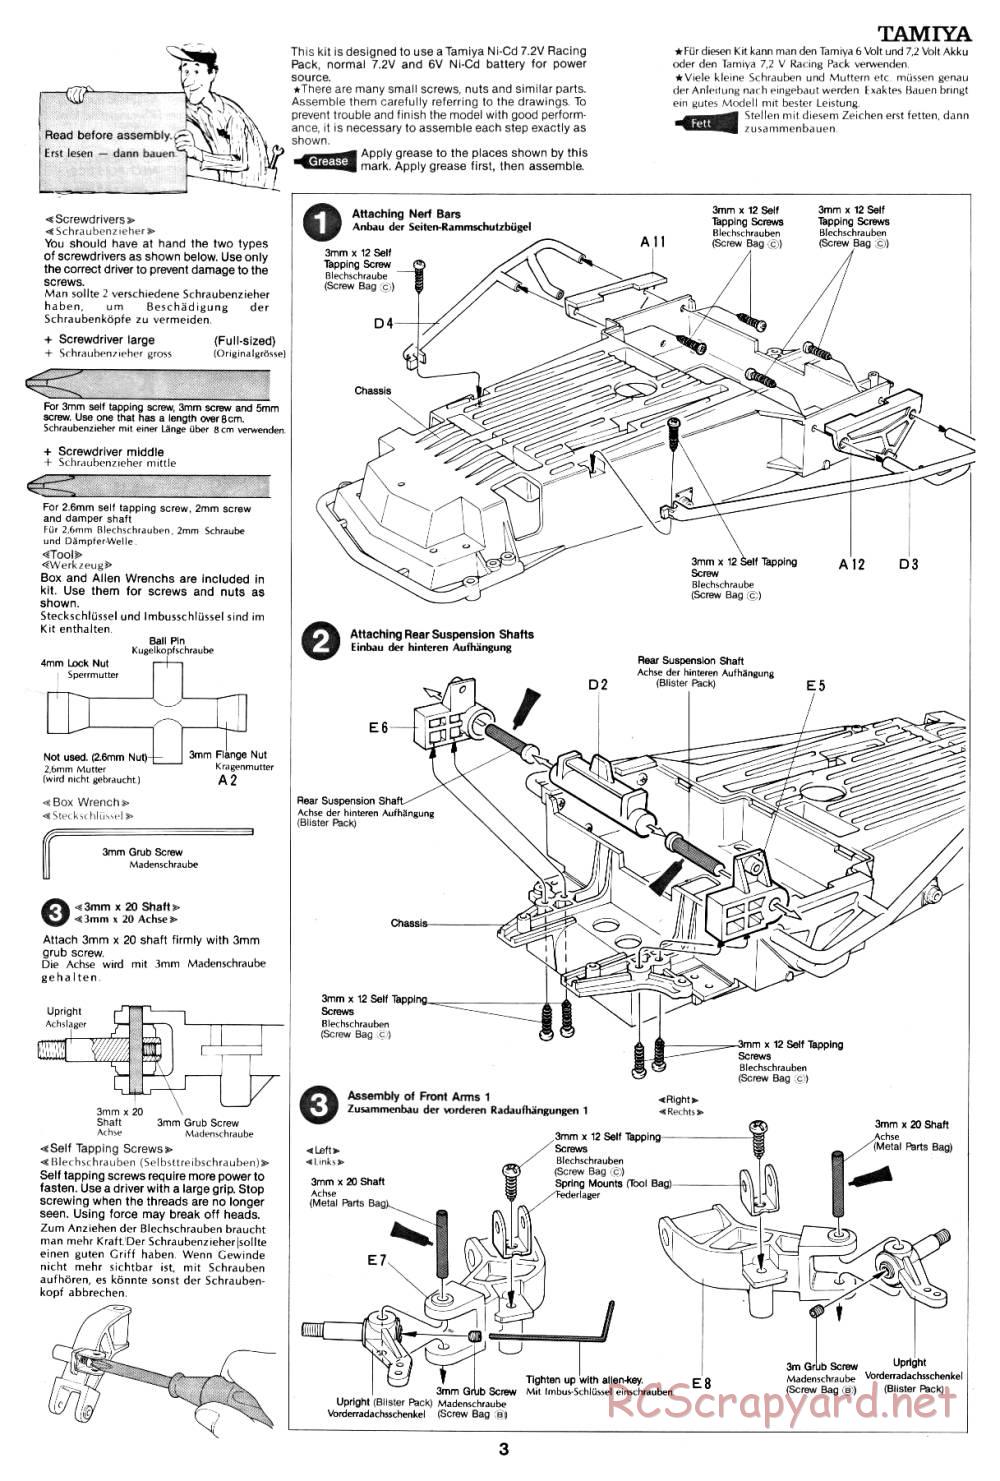 Tamiya - Fast Attack Vehicle - 58046 - Manual - Page 3